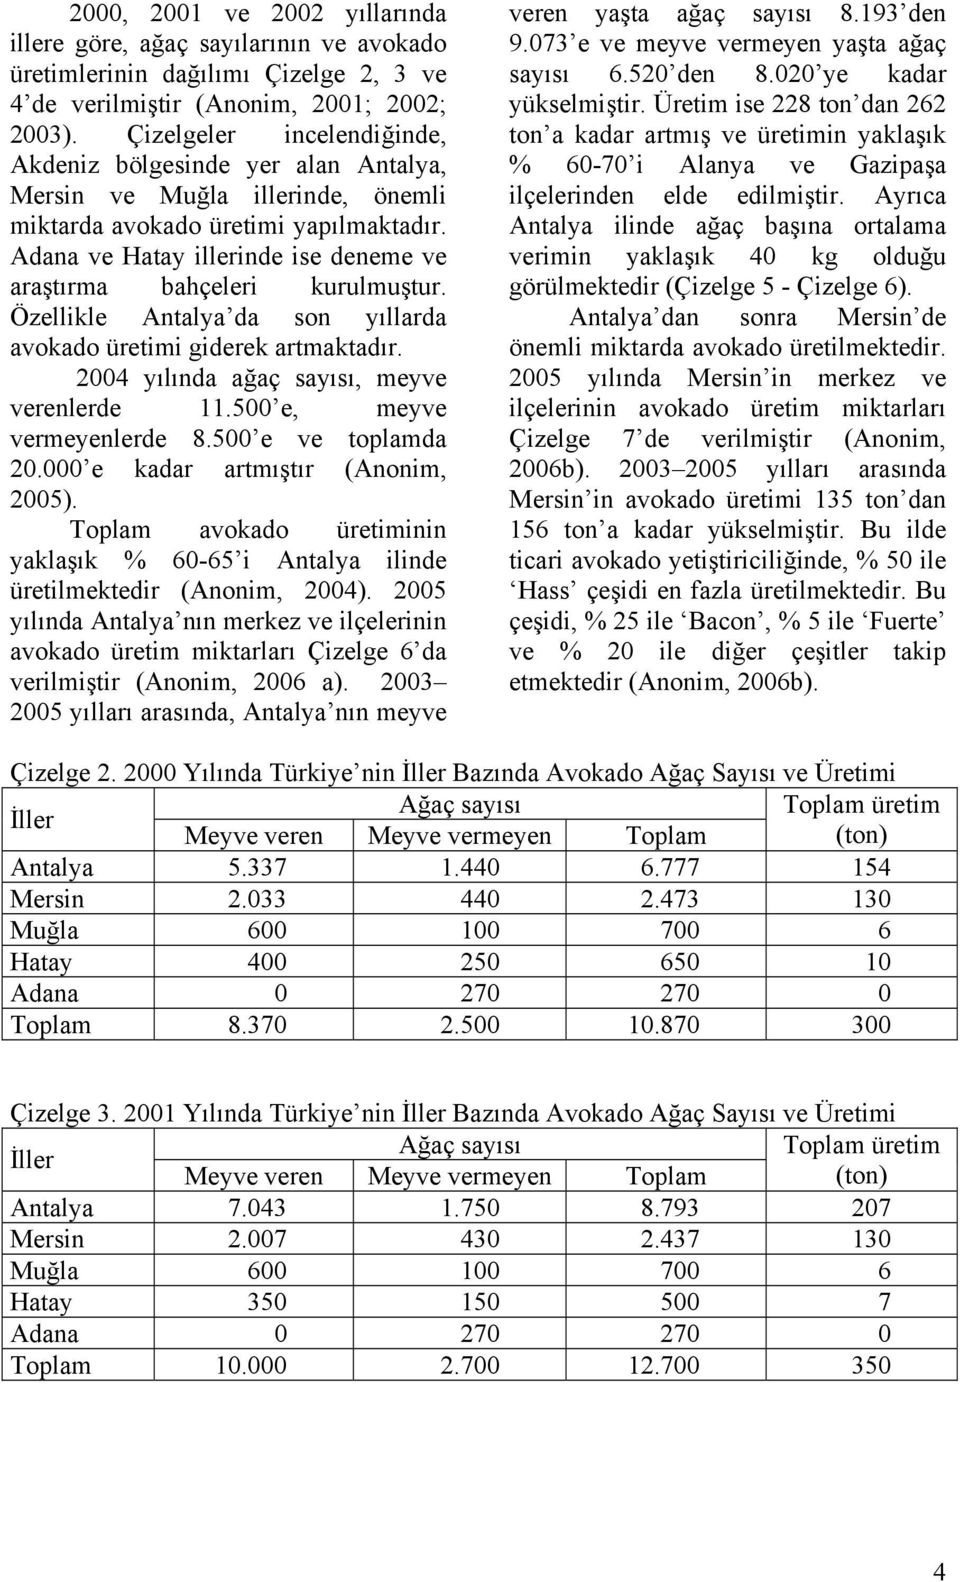 Adana ve Hatay illerinde ise deneme ve araştırma bahçeleri kurulmuştur. Özellikle Antalya da son yıllarda avokado üretimi giderek artmaktadır. 2004 yılında ağaç sayısı, meyve verenlerde 11.